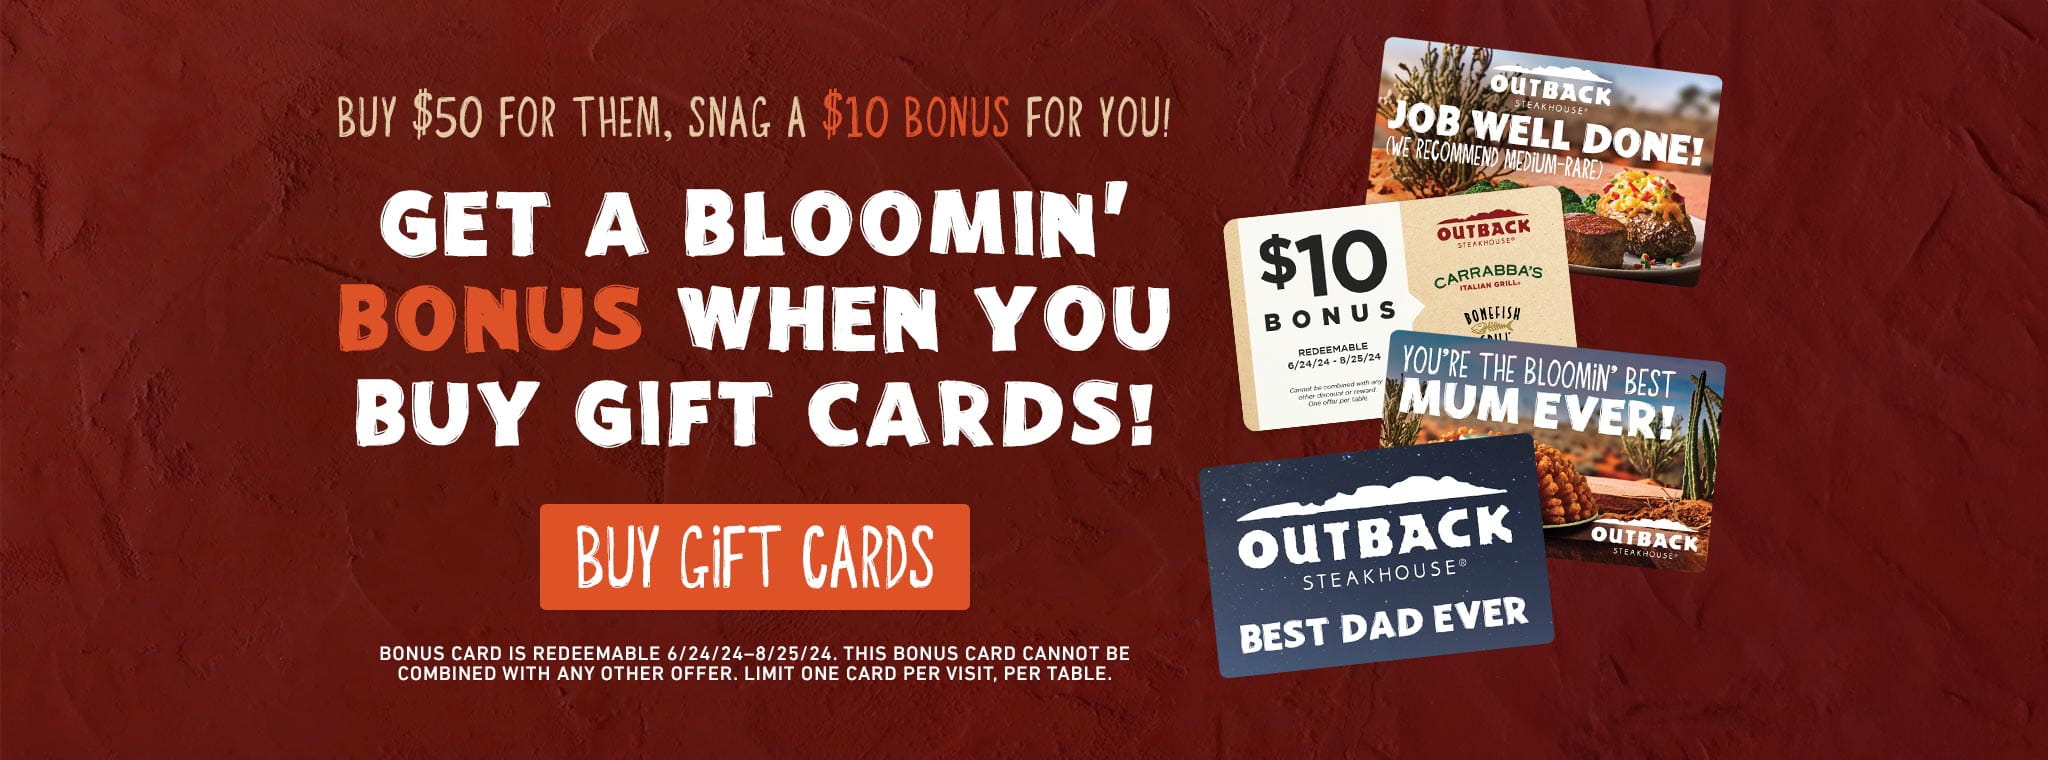 Buy $50 For Them, Snag A $10 Bonus For You! Get A Bloomin' Bonus When You Buy Gift Cards! BUY GIFT CARDS